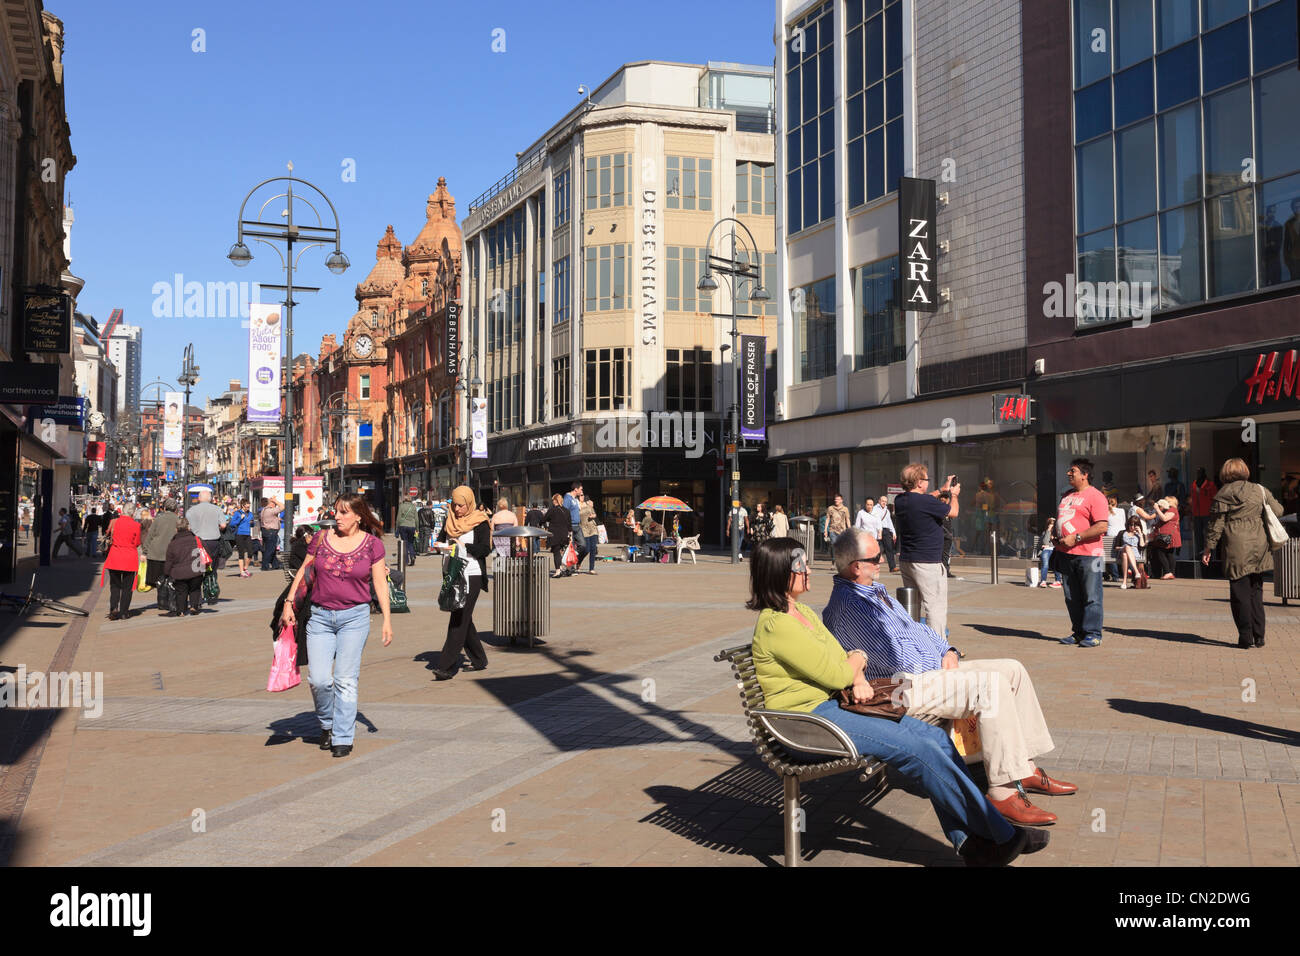 La calle principal peatonal concurrida escena con gente de compras en el centro de la ciudad de Briggate, Leeds, West Yorkshire, Inglaterra, Reino Unido, Gran Bretaña Foto de stock